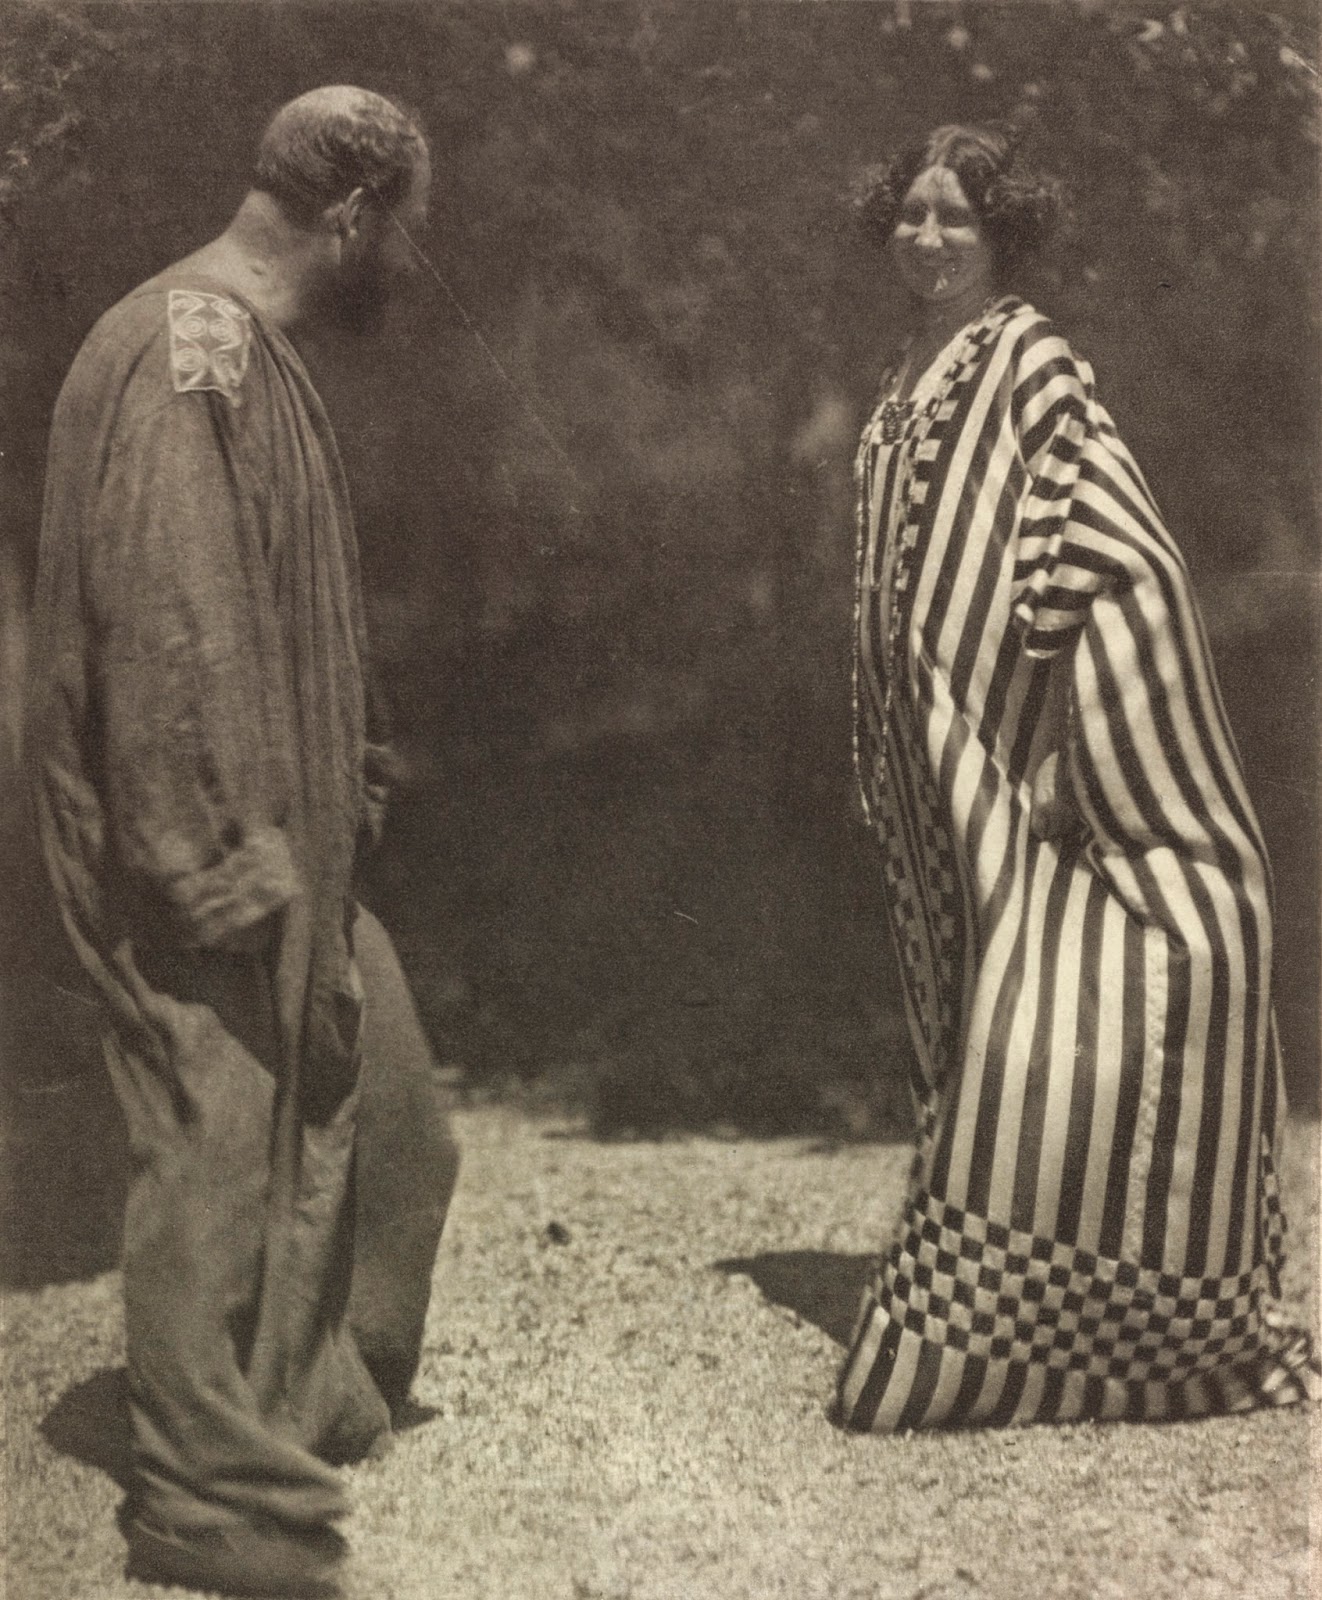 http://www.leopoldmuseum.org/media/image/1458_Fotografie_von_Hans_Boehler_Gustav_Klimt_und_Emilie_Floege_1909.jpg